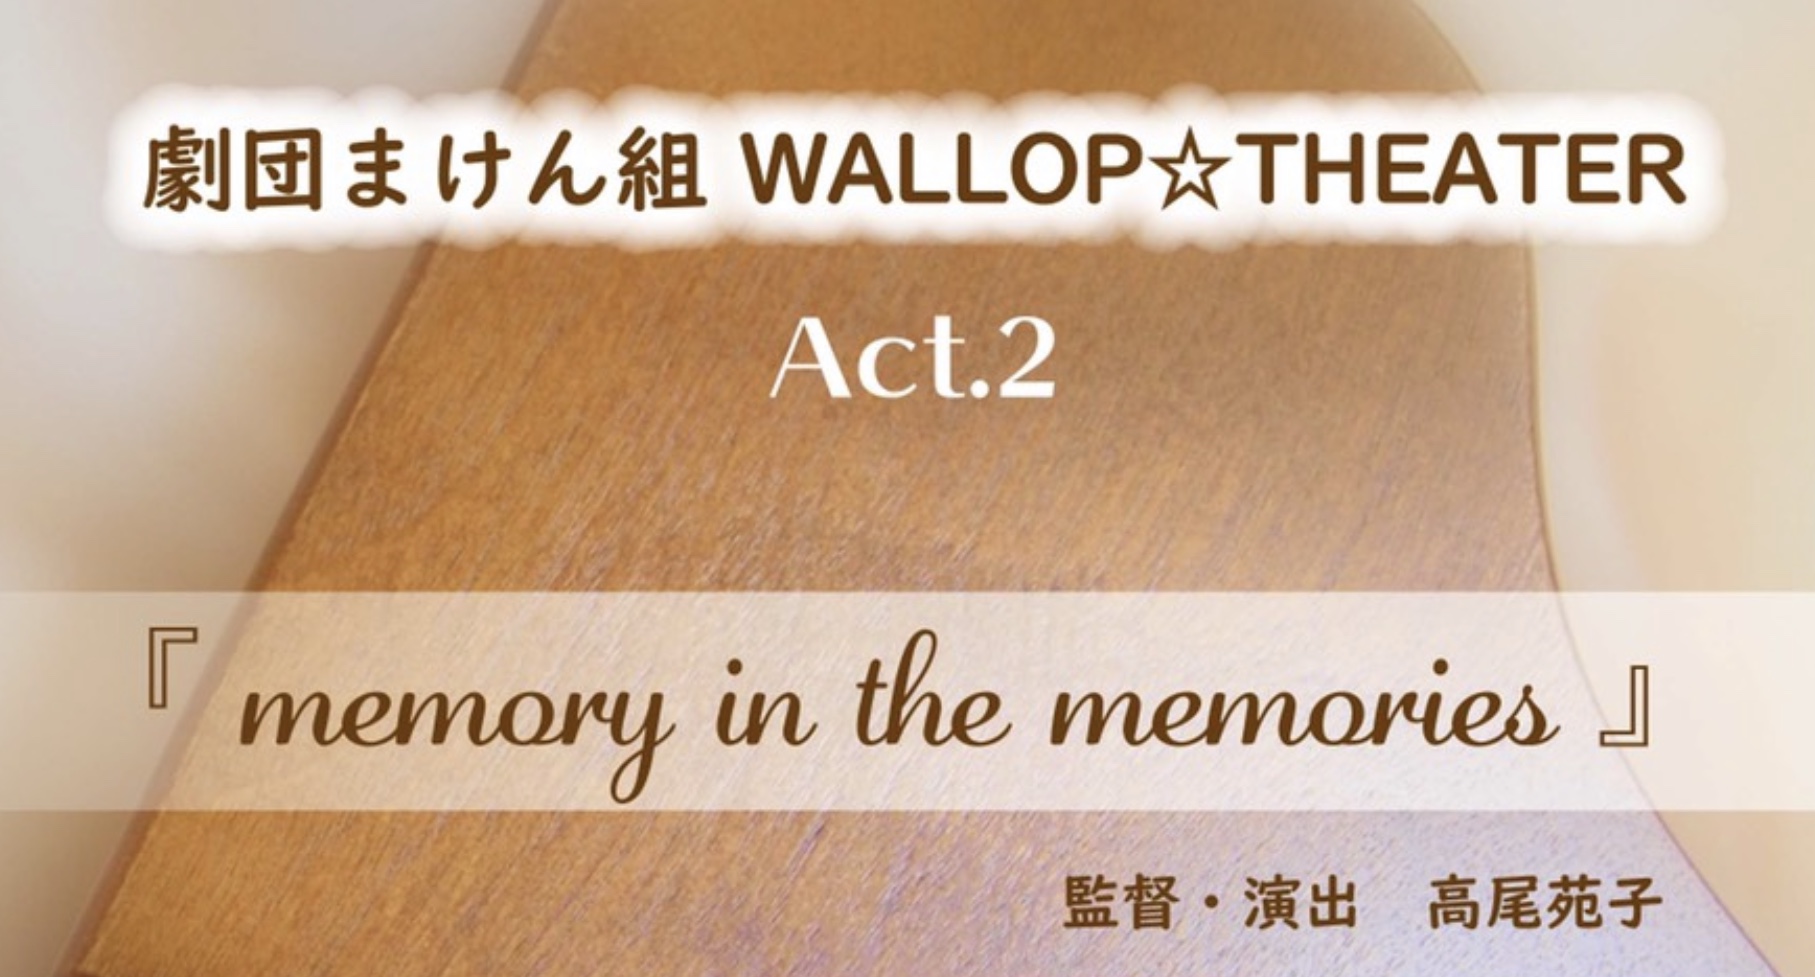 劇団まけん組 WALLOP☆THEATER 『memory in the memories』〜思い出の中の記憶〜